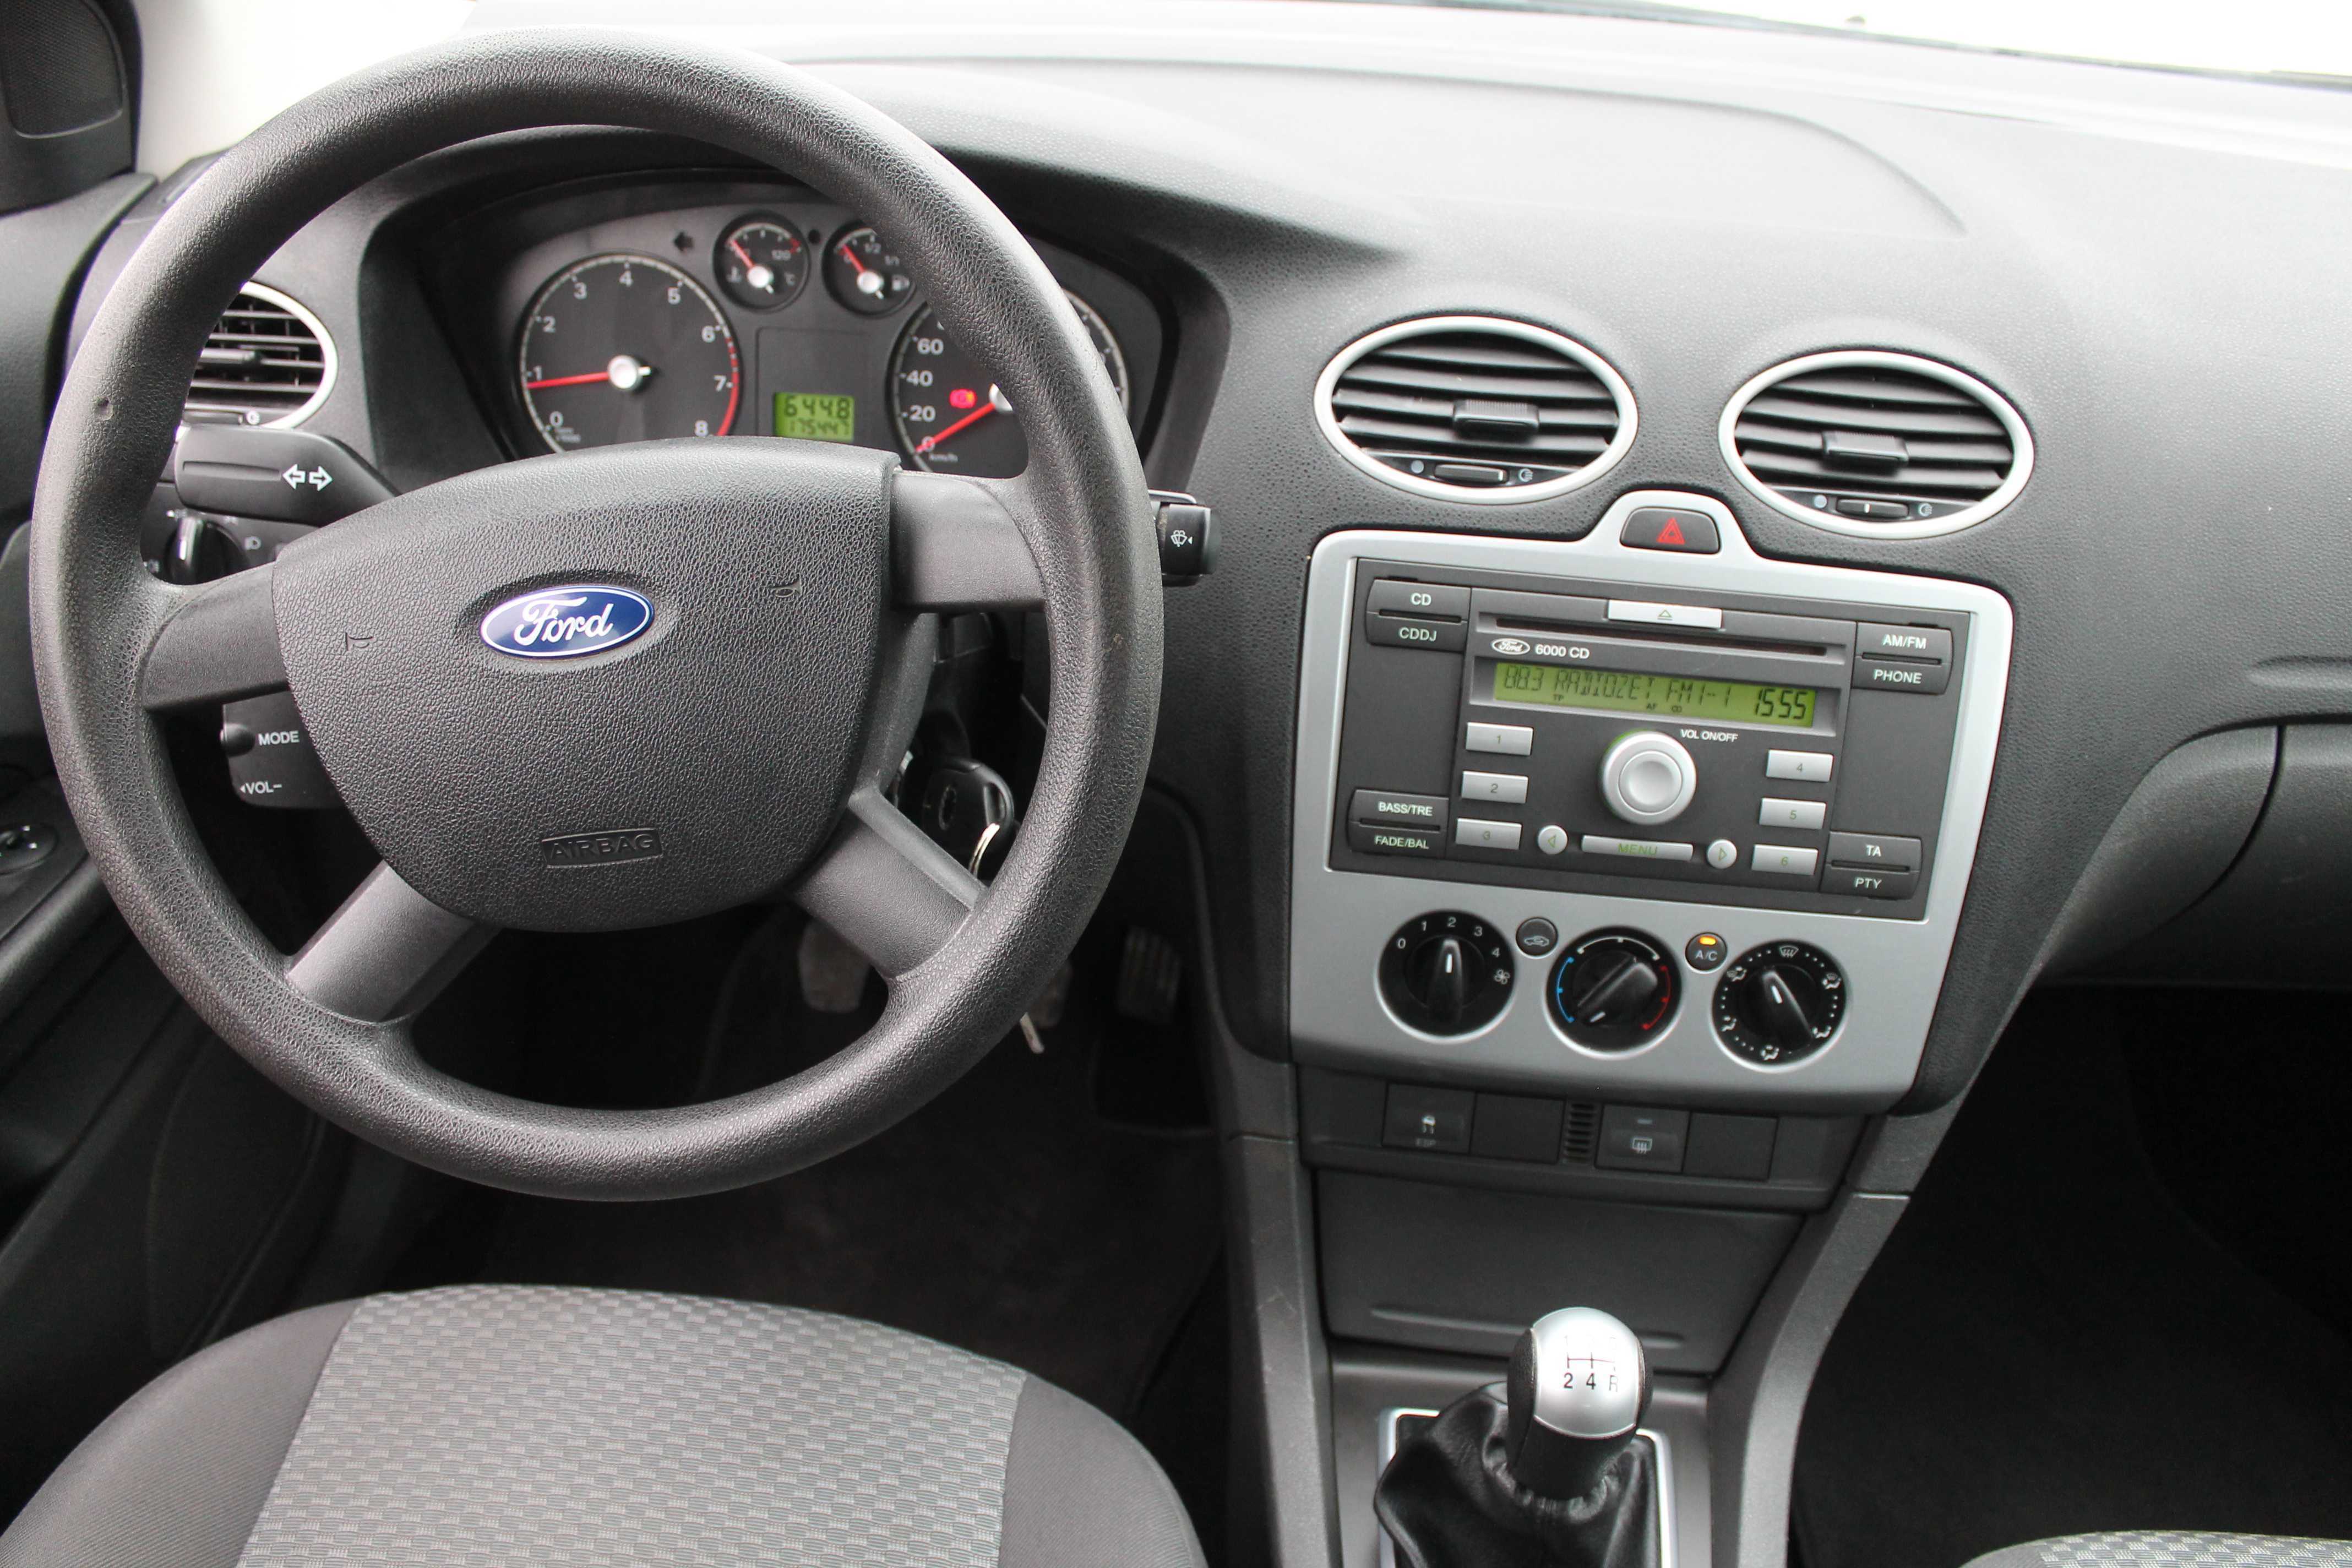 Ford Focus 1.6 benzyna*tylko 175tys km*klima*Koła dodatkowe* z Niemiec